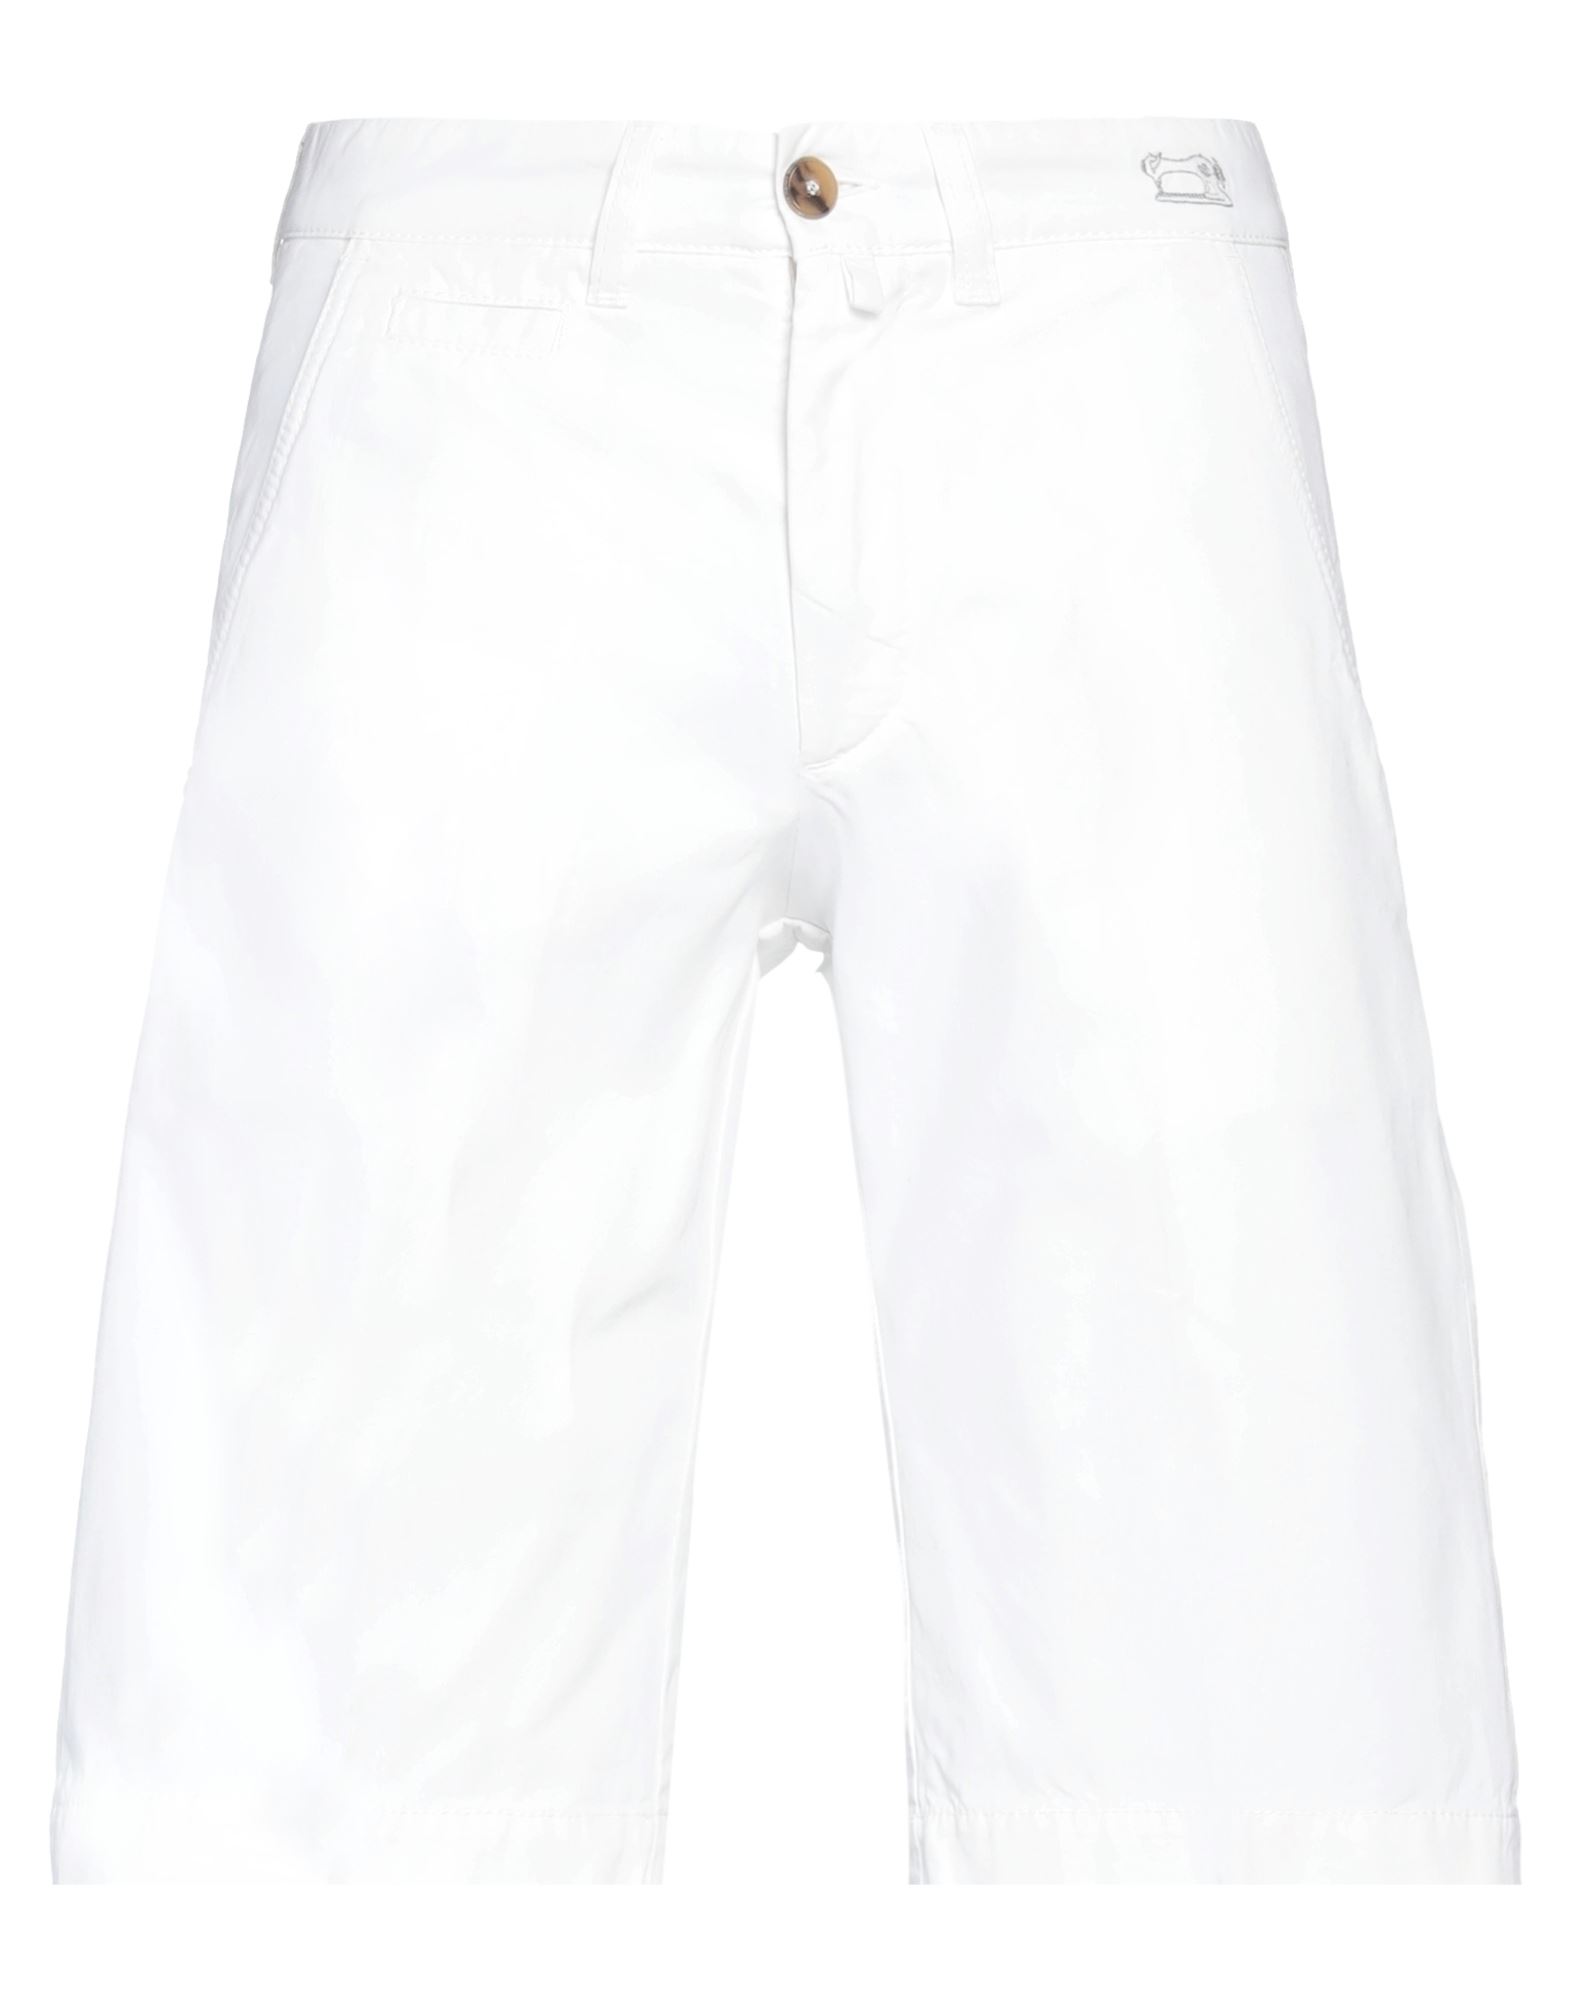 Jacob Cohёn Man Shorts & Bermuda Shorts White Size 34 Cotton